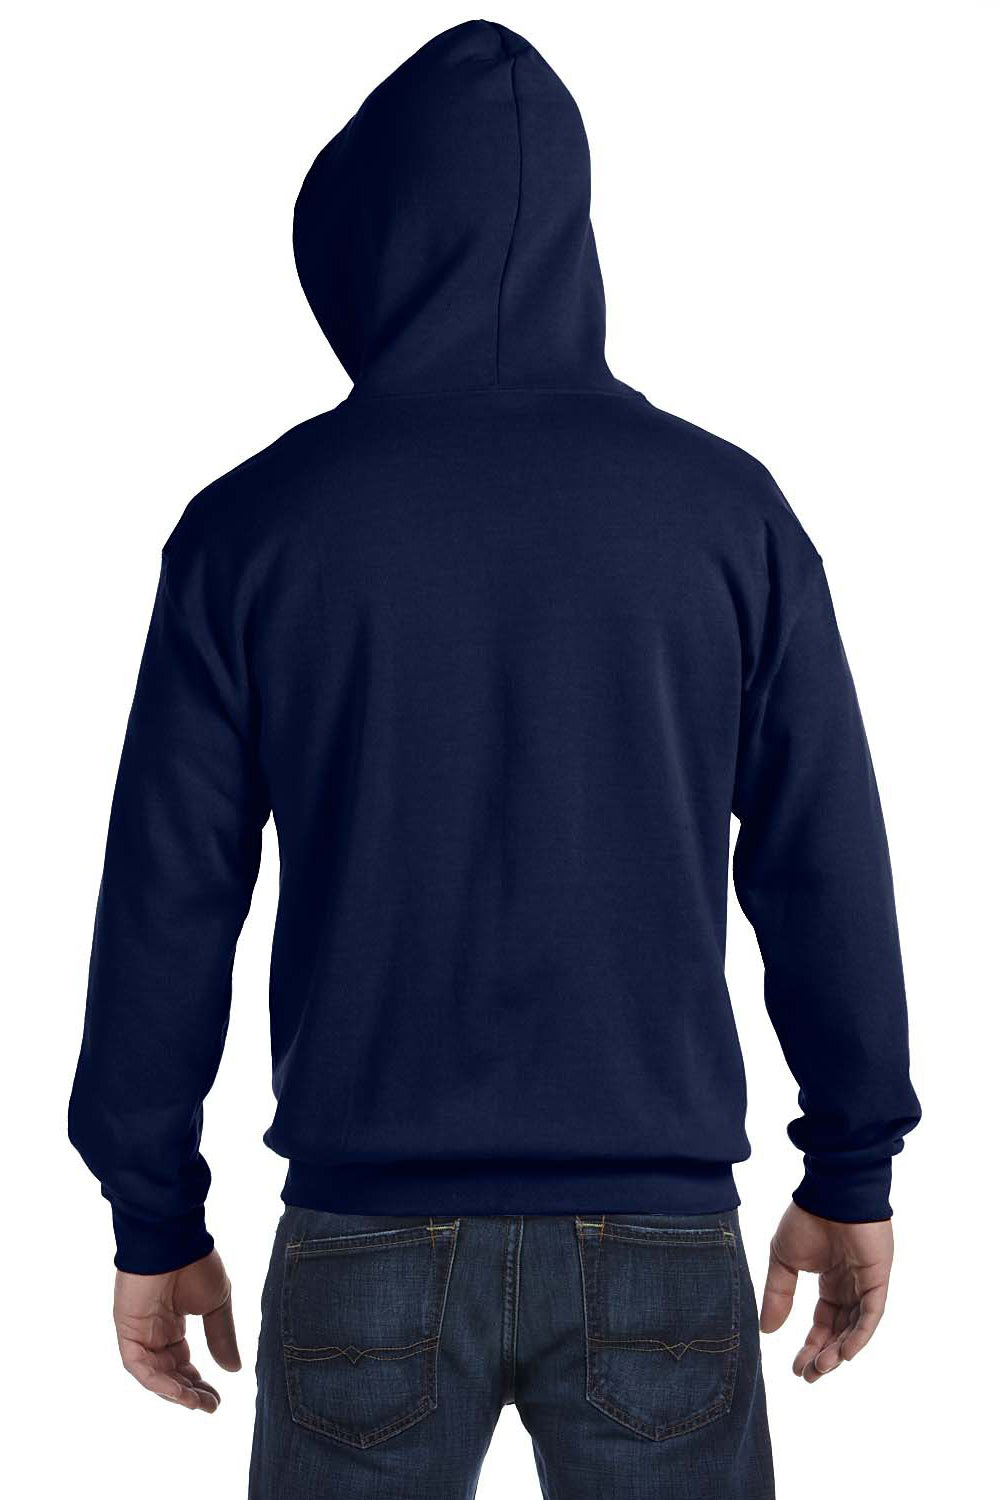 Gildan G186 Mens Full Zip Hooded Sweatshirt Hoodie Navy Blue Back